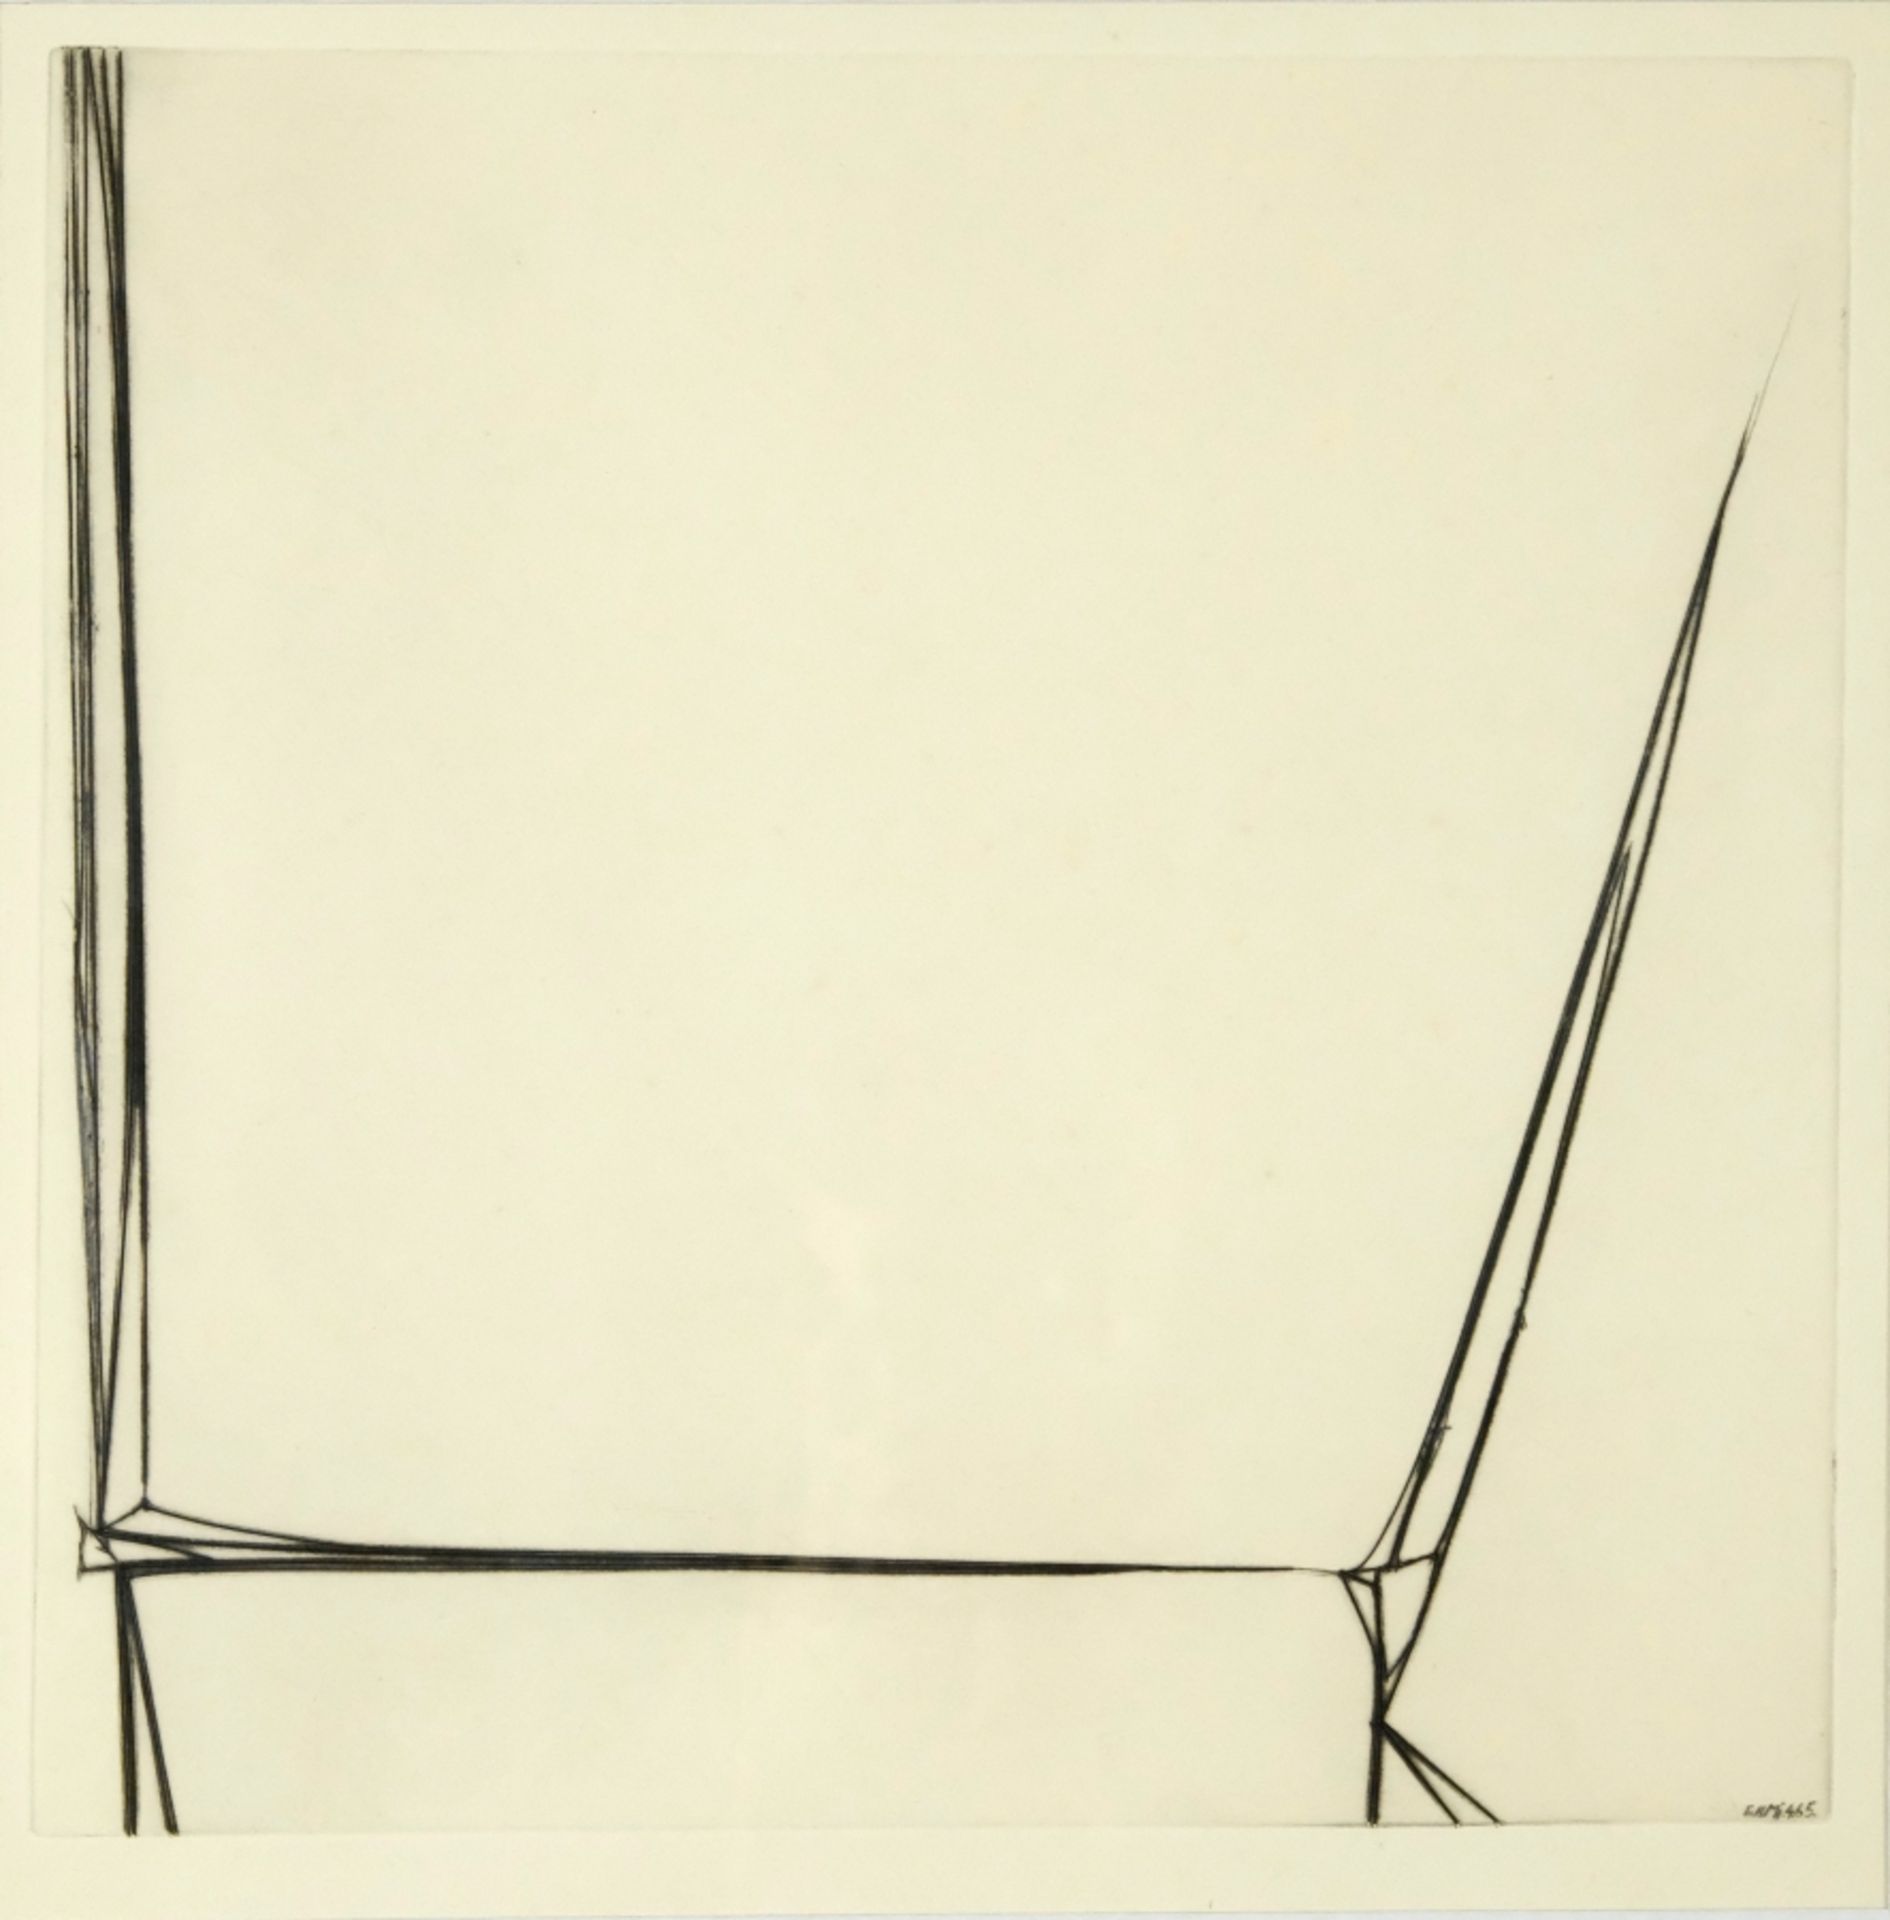 Hauser, Erich (1930-2004) "Mi.4.65.", 1965, drypoint.